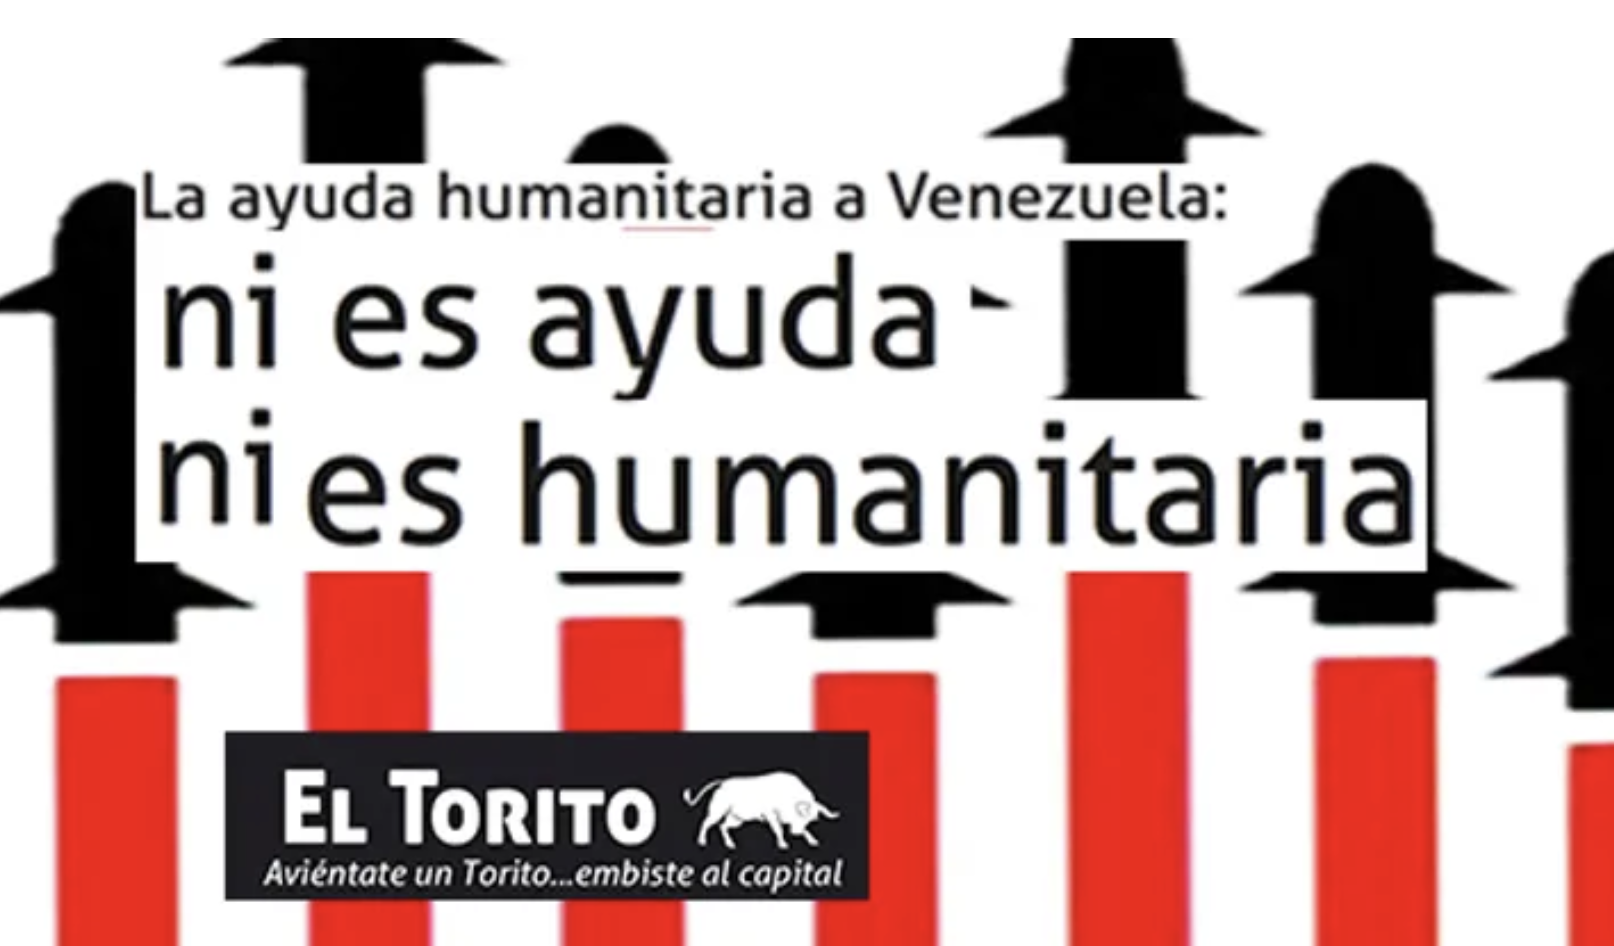 La ayuda humanitaria a Venezuela: ni es ayuda ni es humanitaria